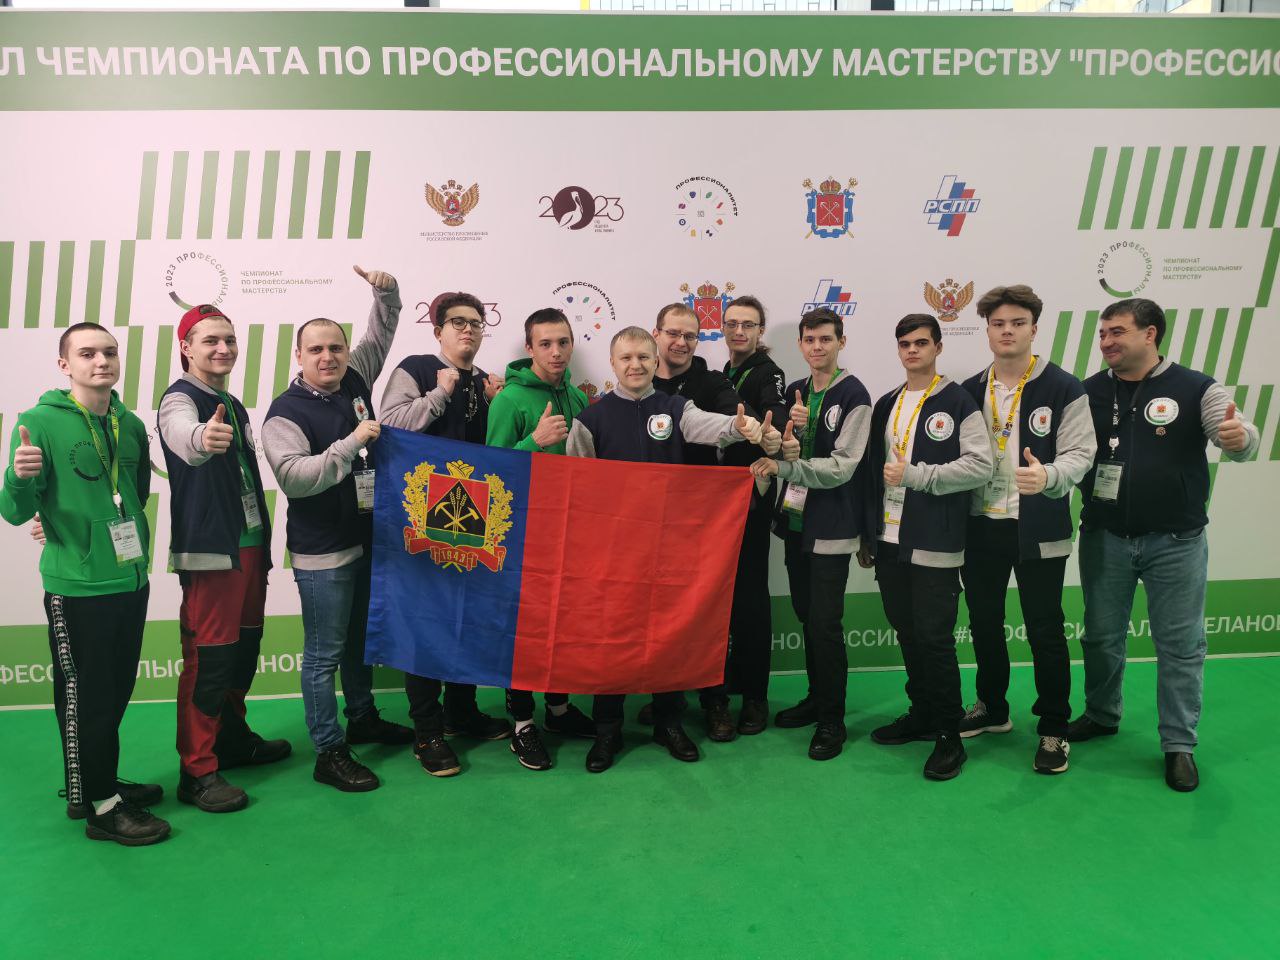 Кузбасская сборная взяла золото и серебро чемпионата по профессиональному мастерству «Профессионалы»